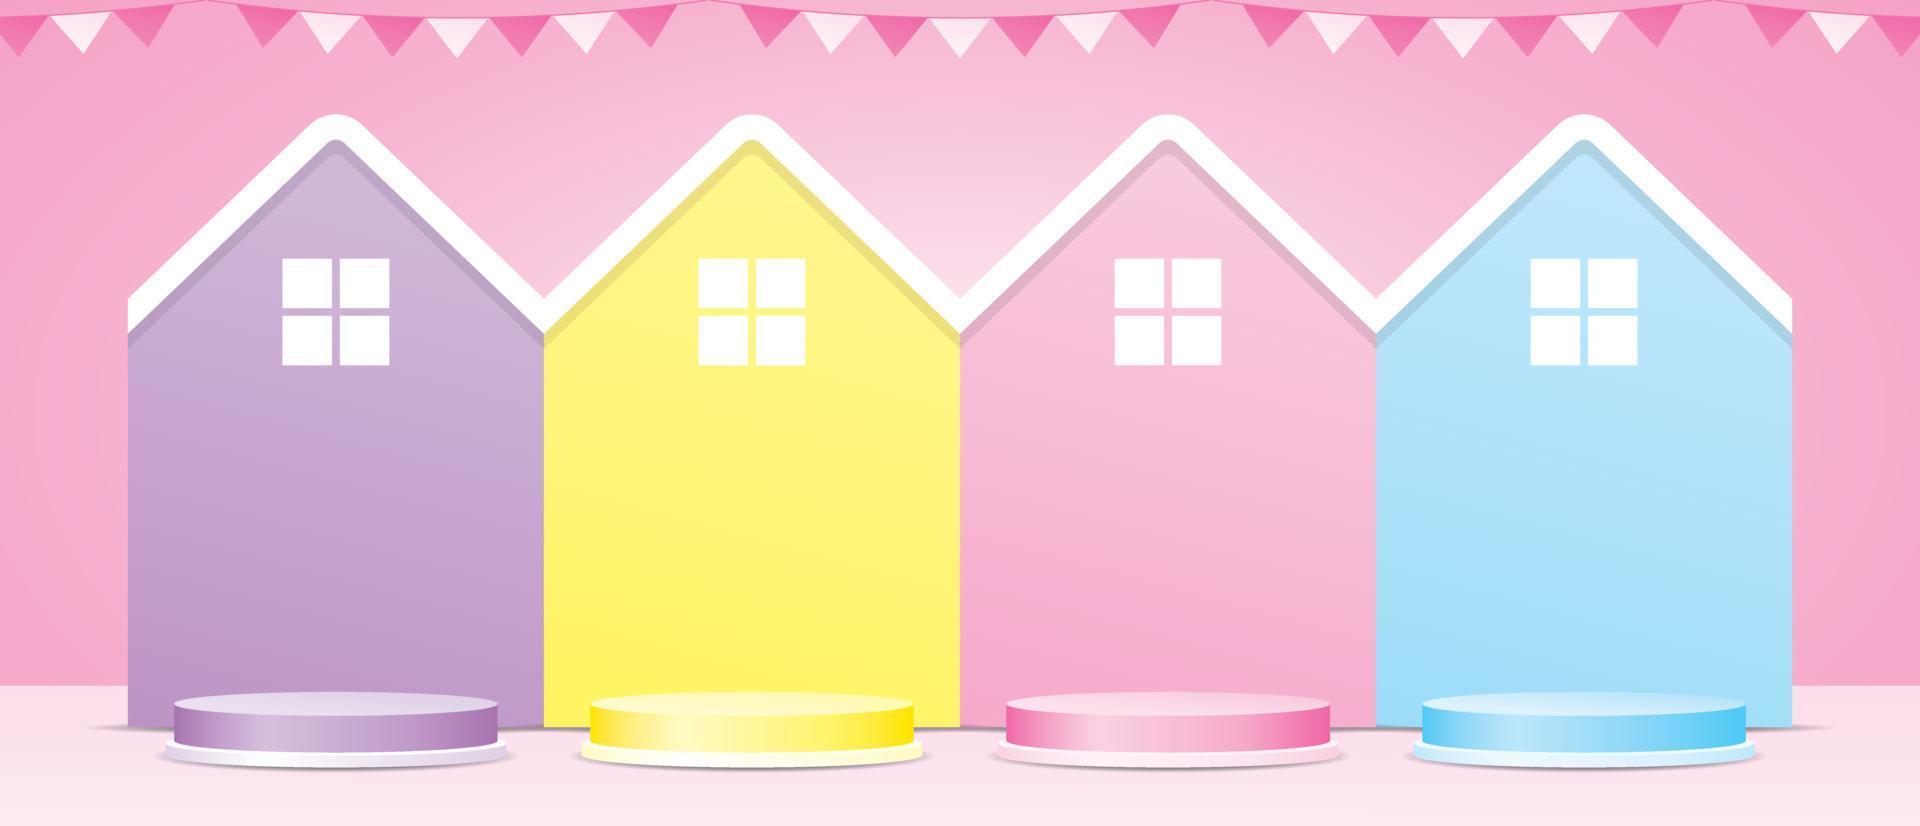 schattige pastel huisvorm achtergrond met cirkel podium 3d illustratie vector voor het plaatsen van uw object